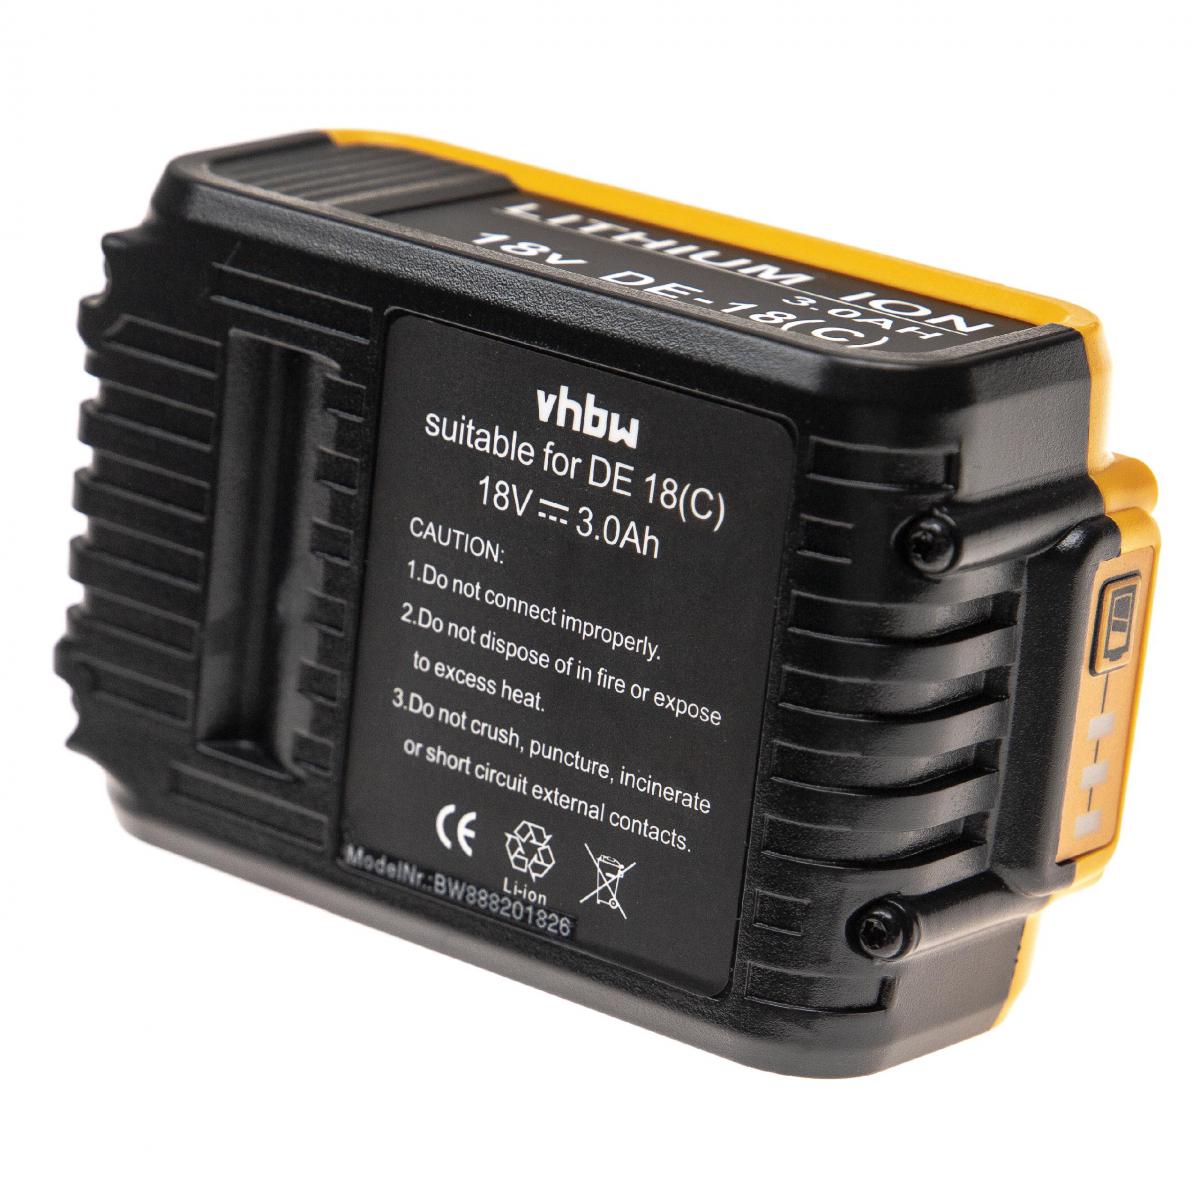 Vhbw - vhbw Batterie compatible avec Dewalt DCF895L2, DCF895M2, DCF899, DCG412, DCG412B, DCG412L2, DCG412M2 outil électrique (3000mAh Li-Ion 18V) - Clouterie